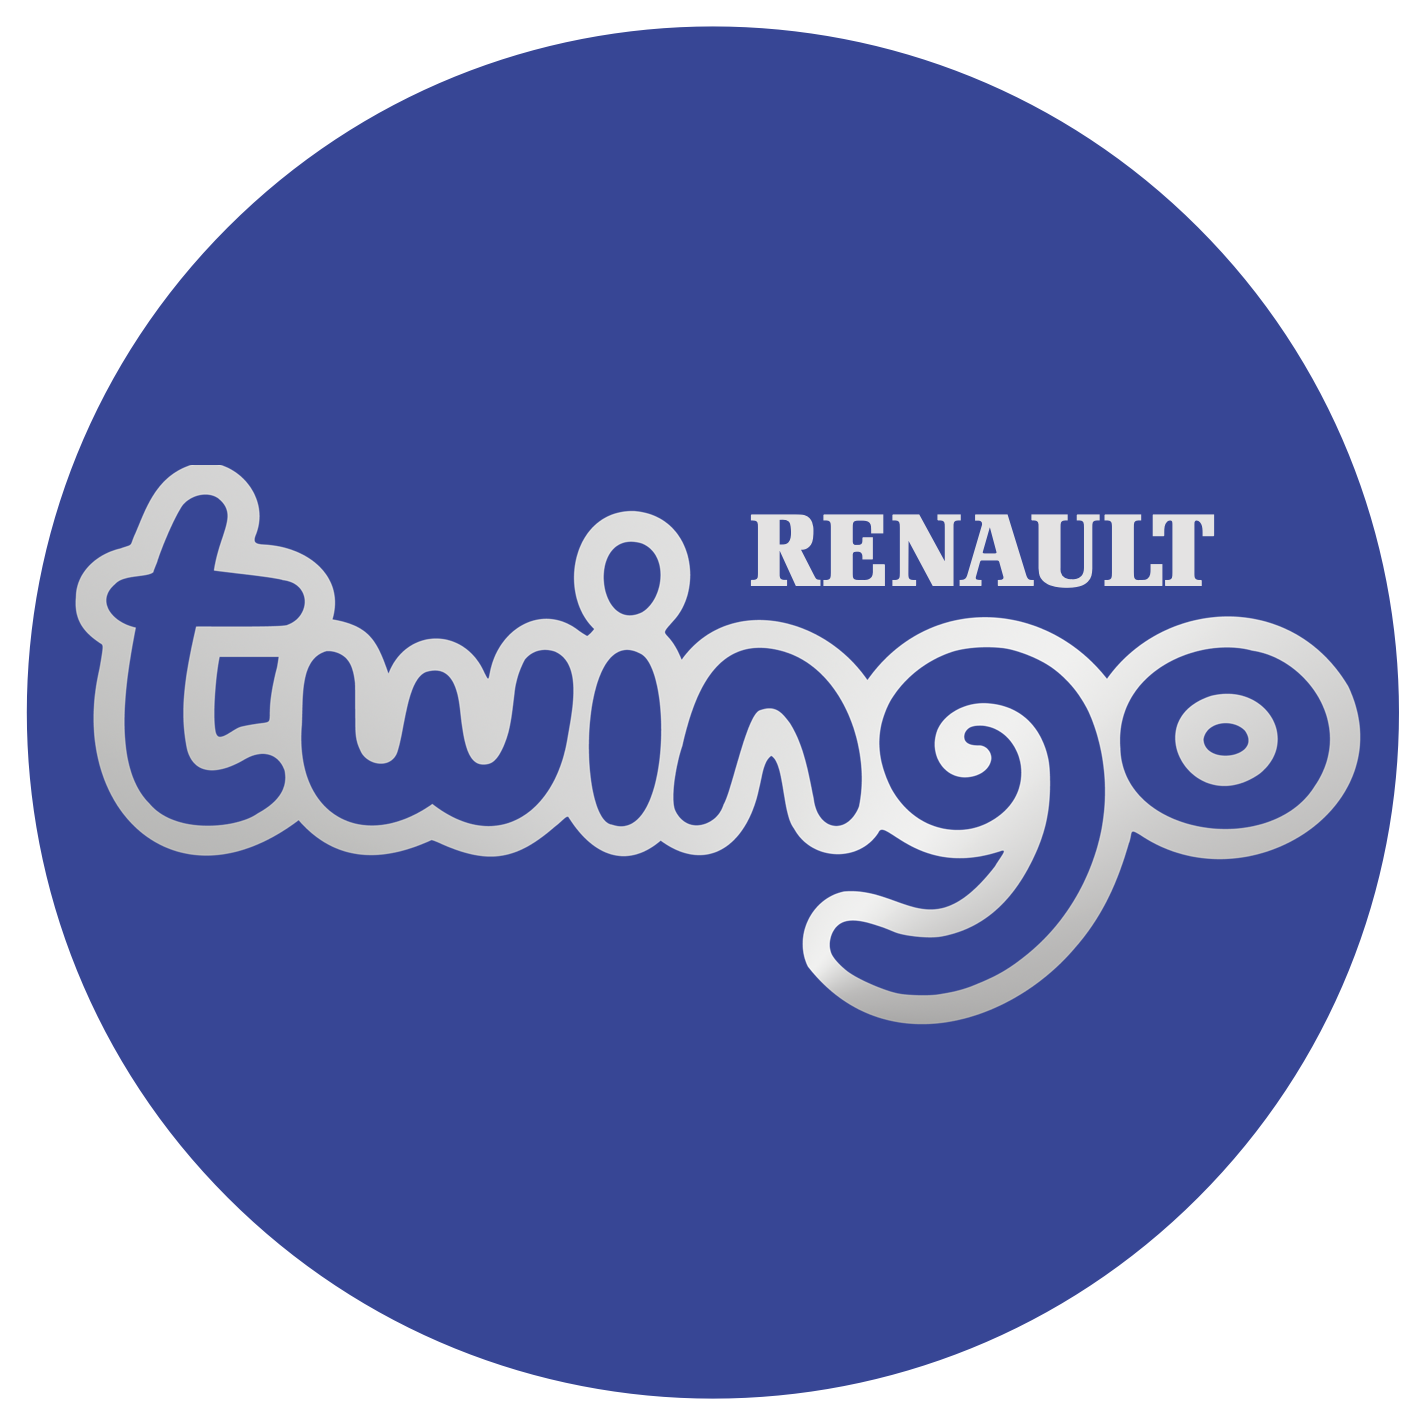 Renault Twingo UK